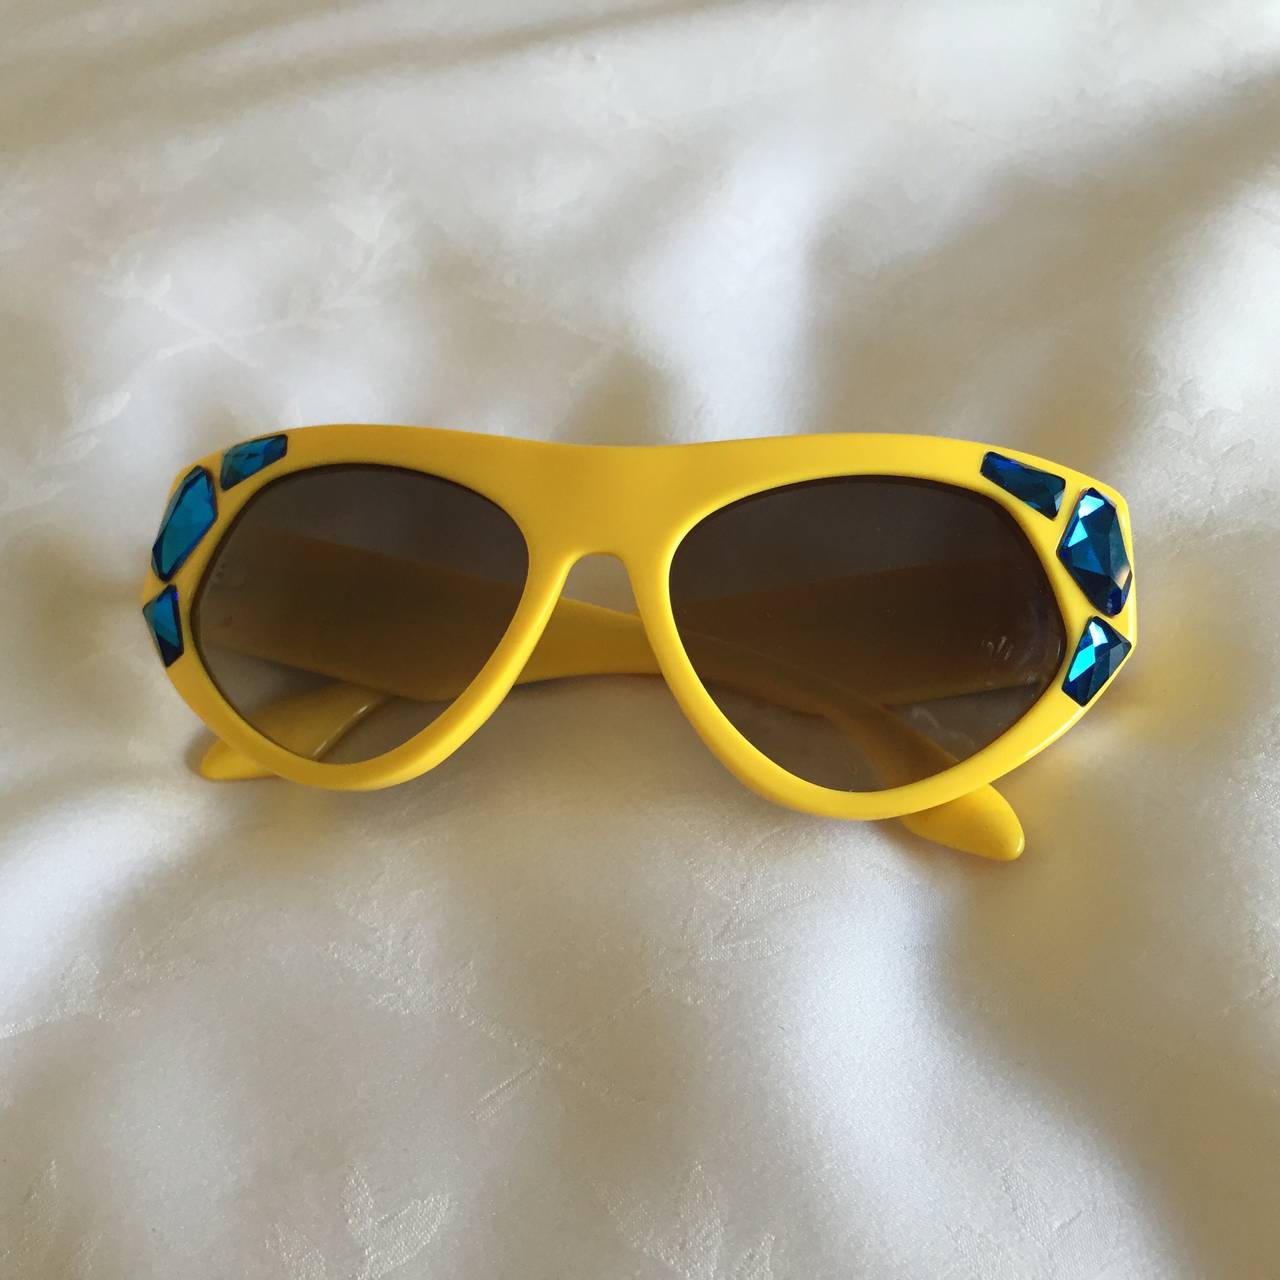 prada sunglasses 2014